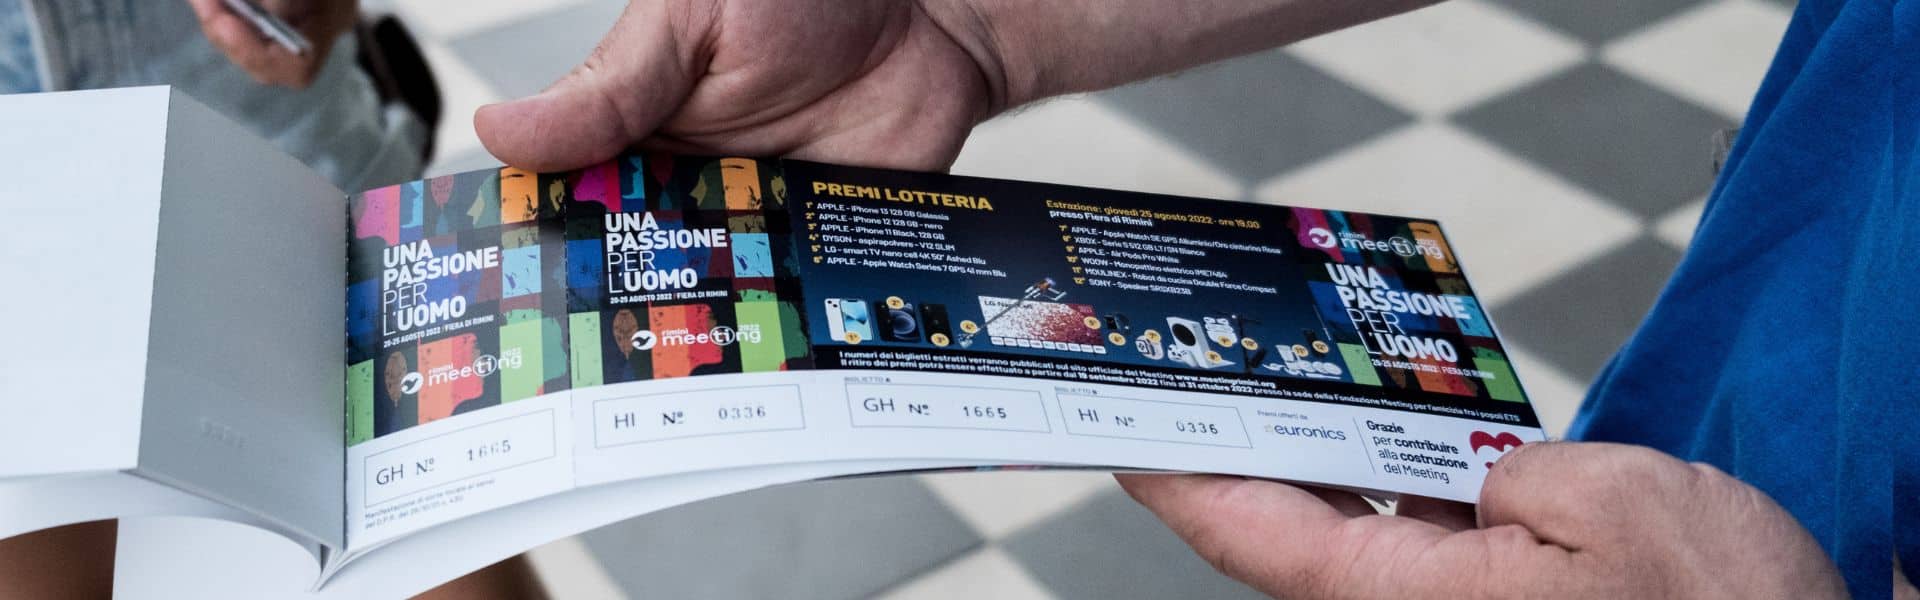 Featured image for “Ecco i biglietti vincenti della lotteria”